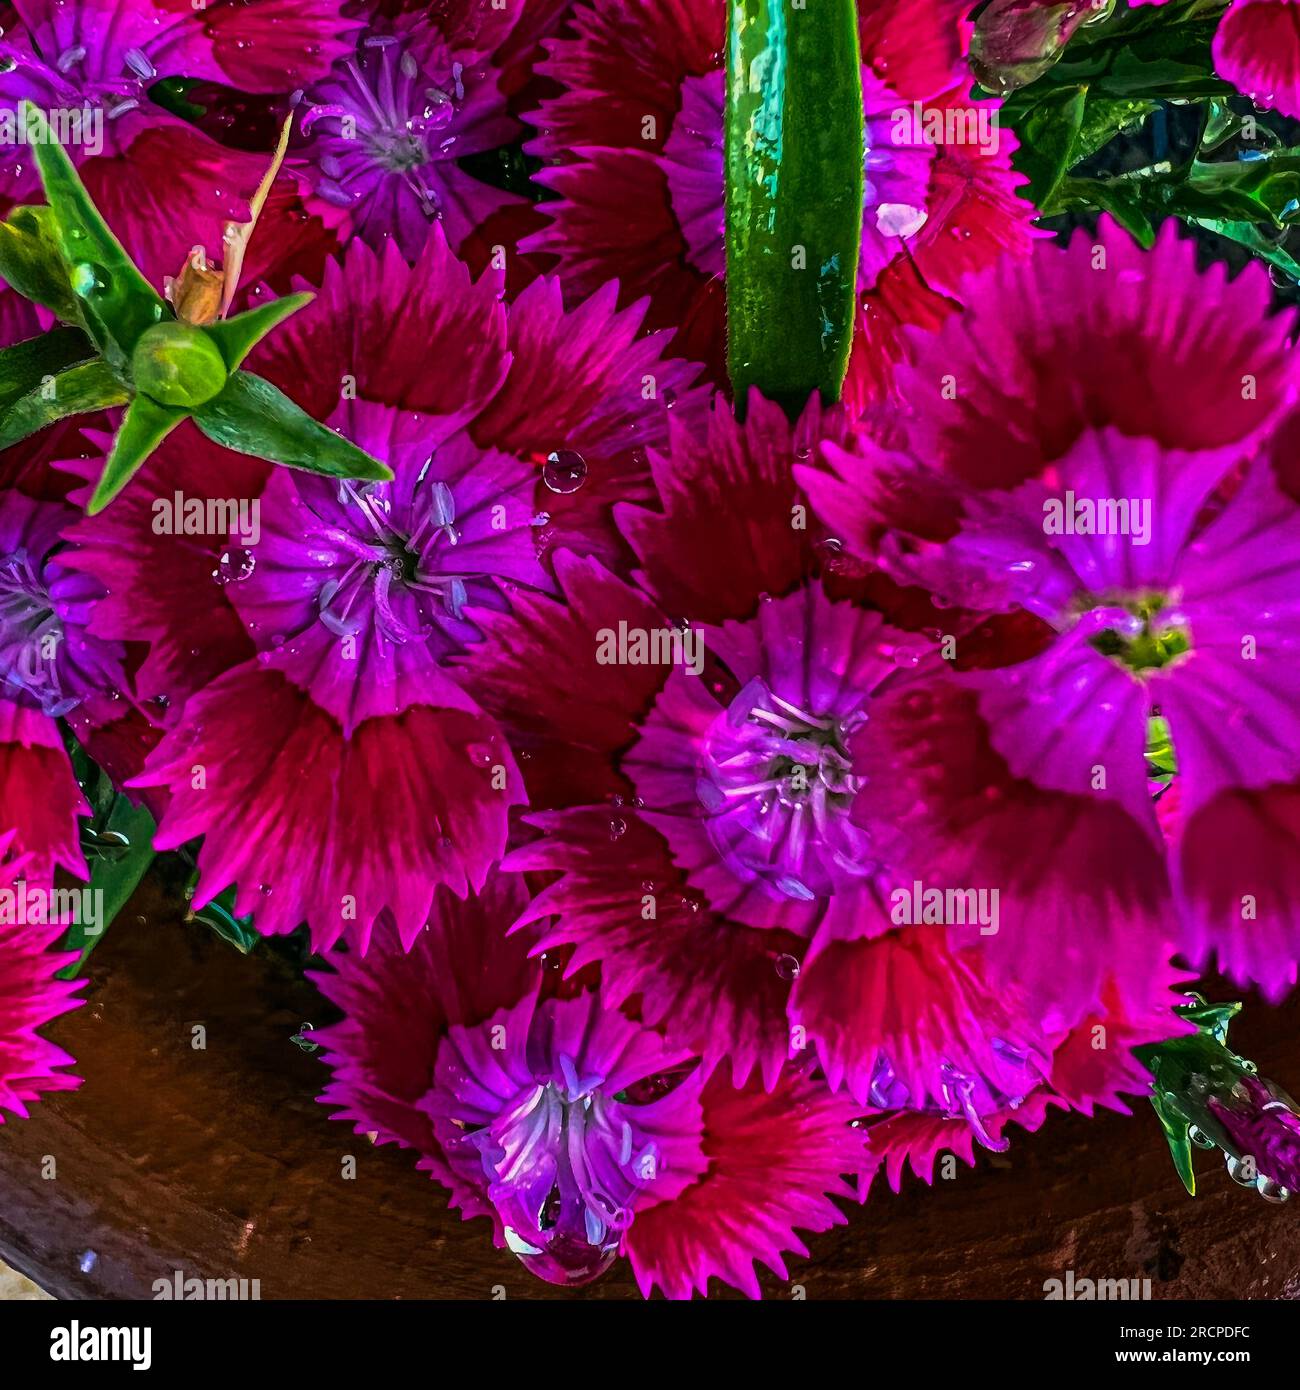 Dianthus barbatus flower blooming in garden Stock Photo